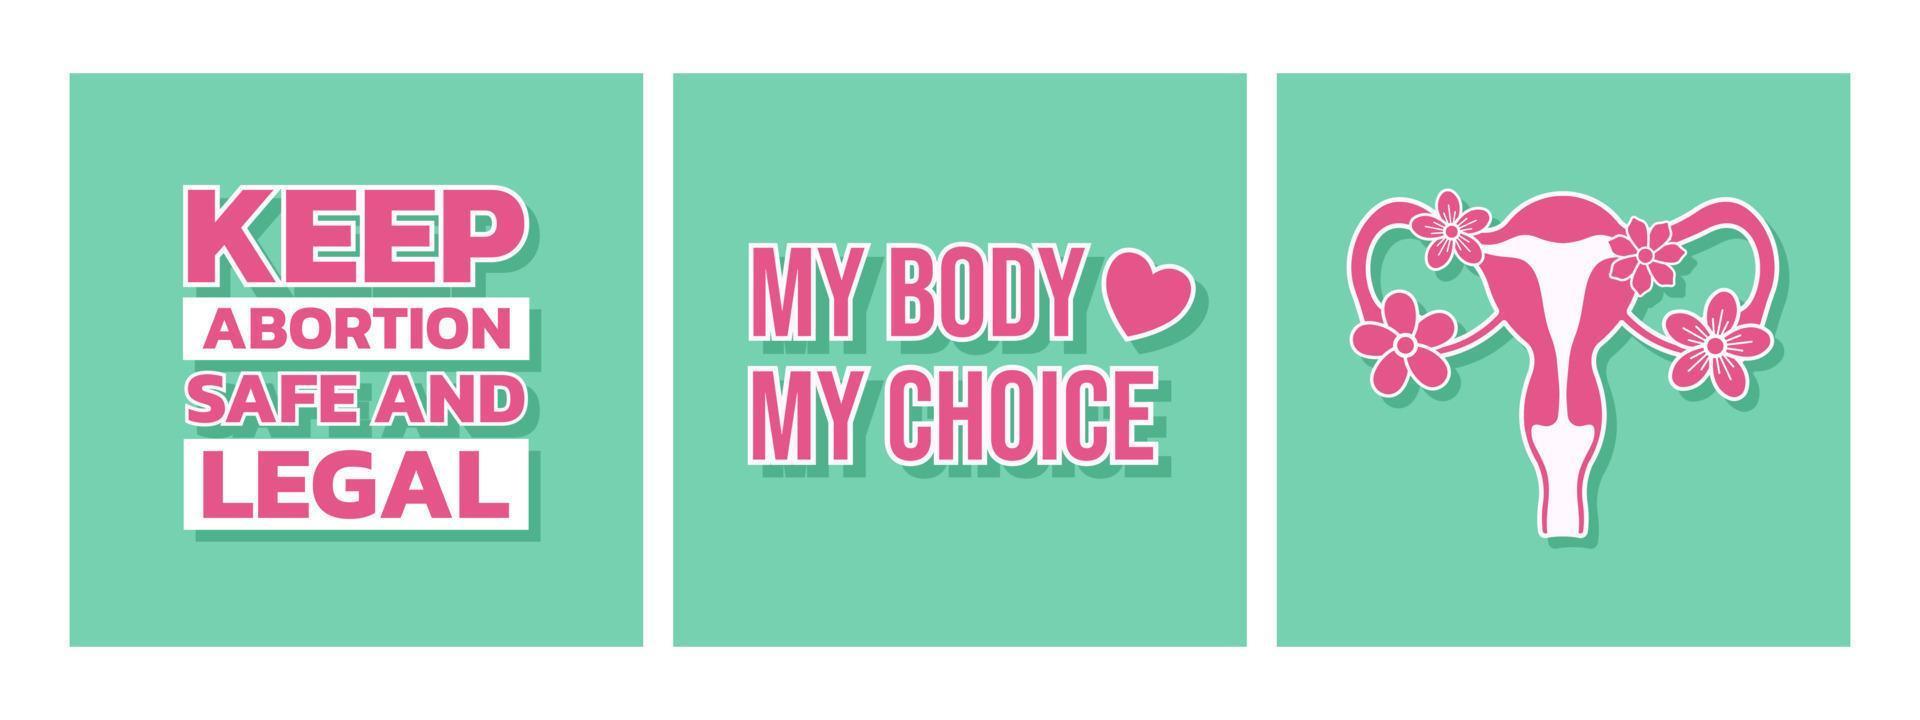 affischsamling för kvinnors aborträtt för kort, t-shirt, affischer. min kropp mitt val slogan, hålla abort säker och laglig fras, kvinnliga reproduktionssystem med blommor. vektor